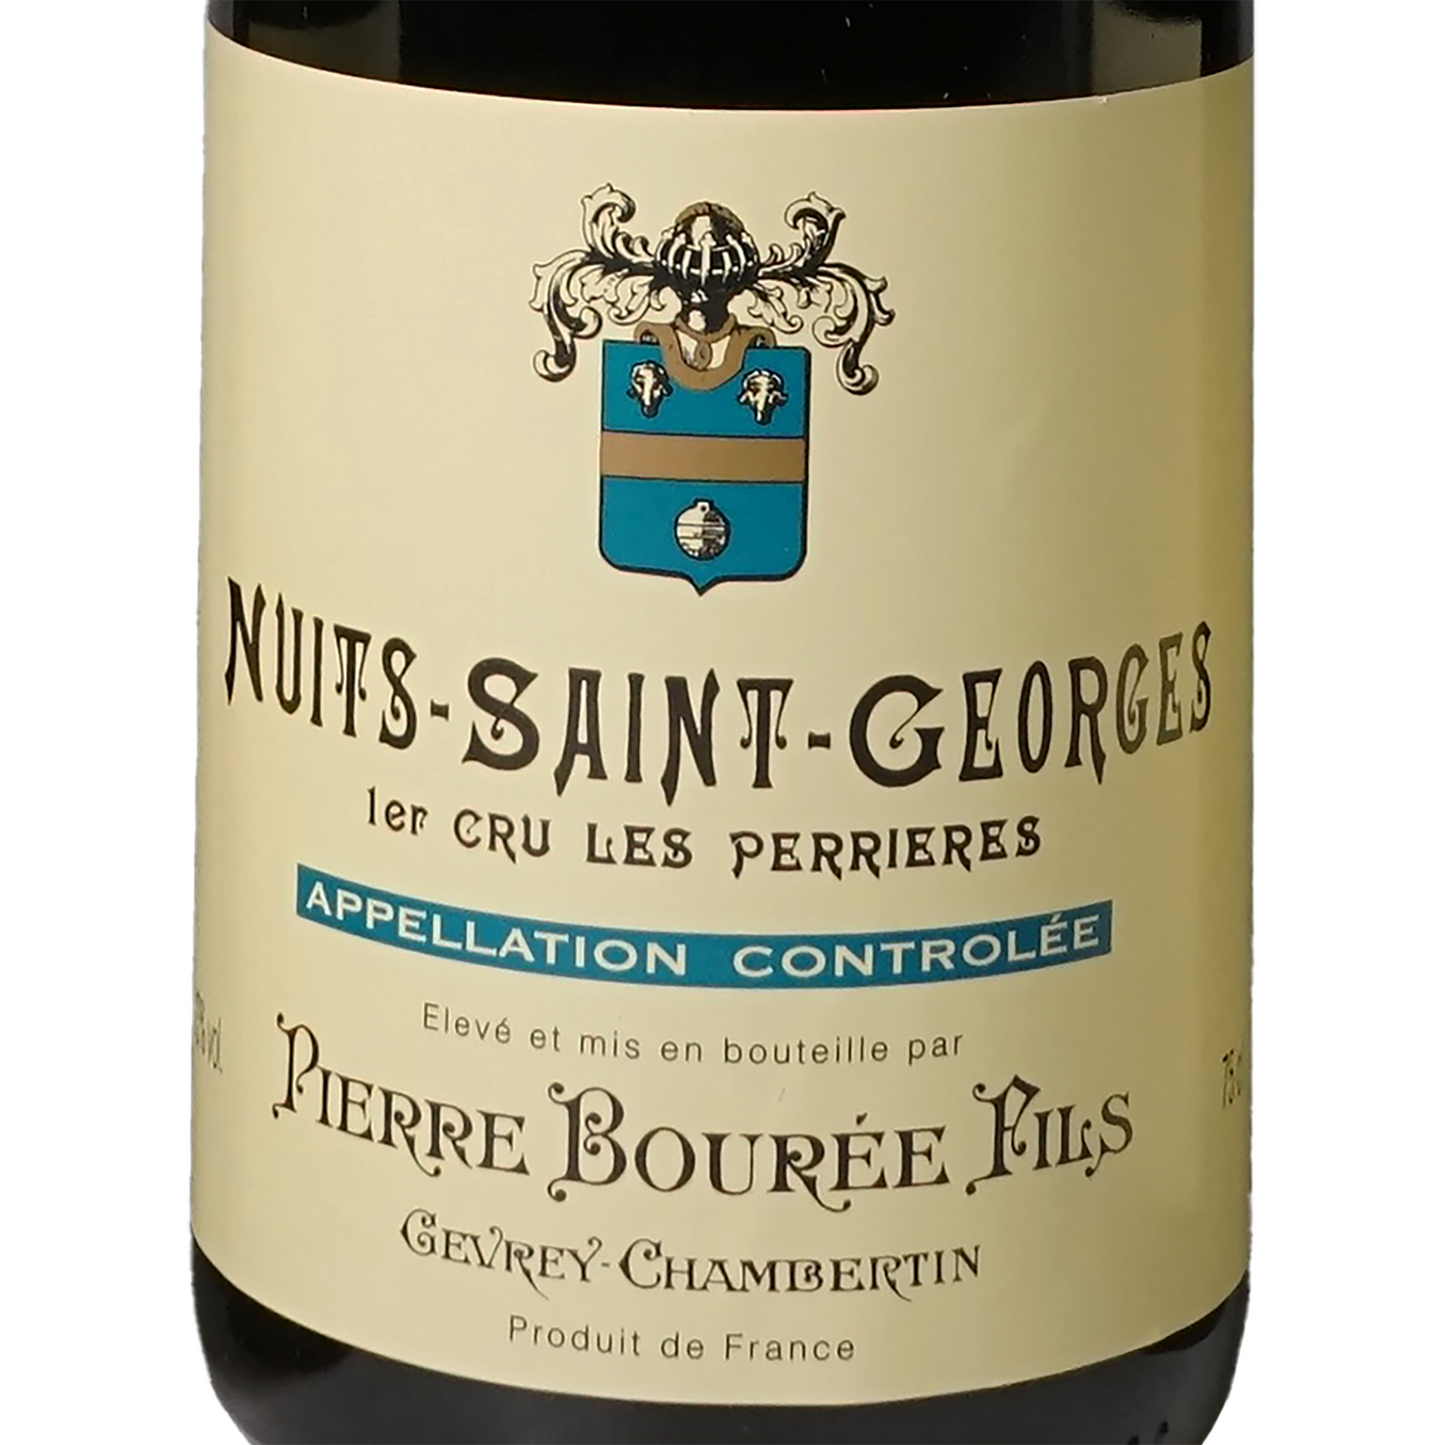 ニュイ・サ 1983年 ニュイ・サン・ジョルジュ プルミエ・クリュ レ・ペリエール ピエール・ブレ/1983 Nuits-Saint-Georges  1er Cru Les Perrieres, Pierre Bouree：海外酒販株式会社 ン・ジョル